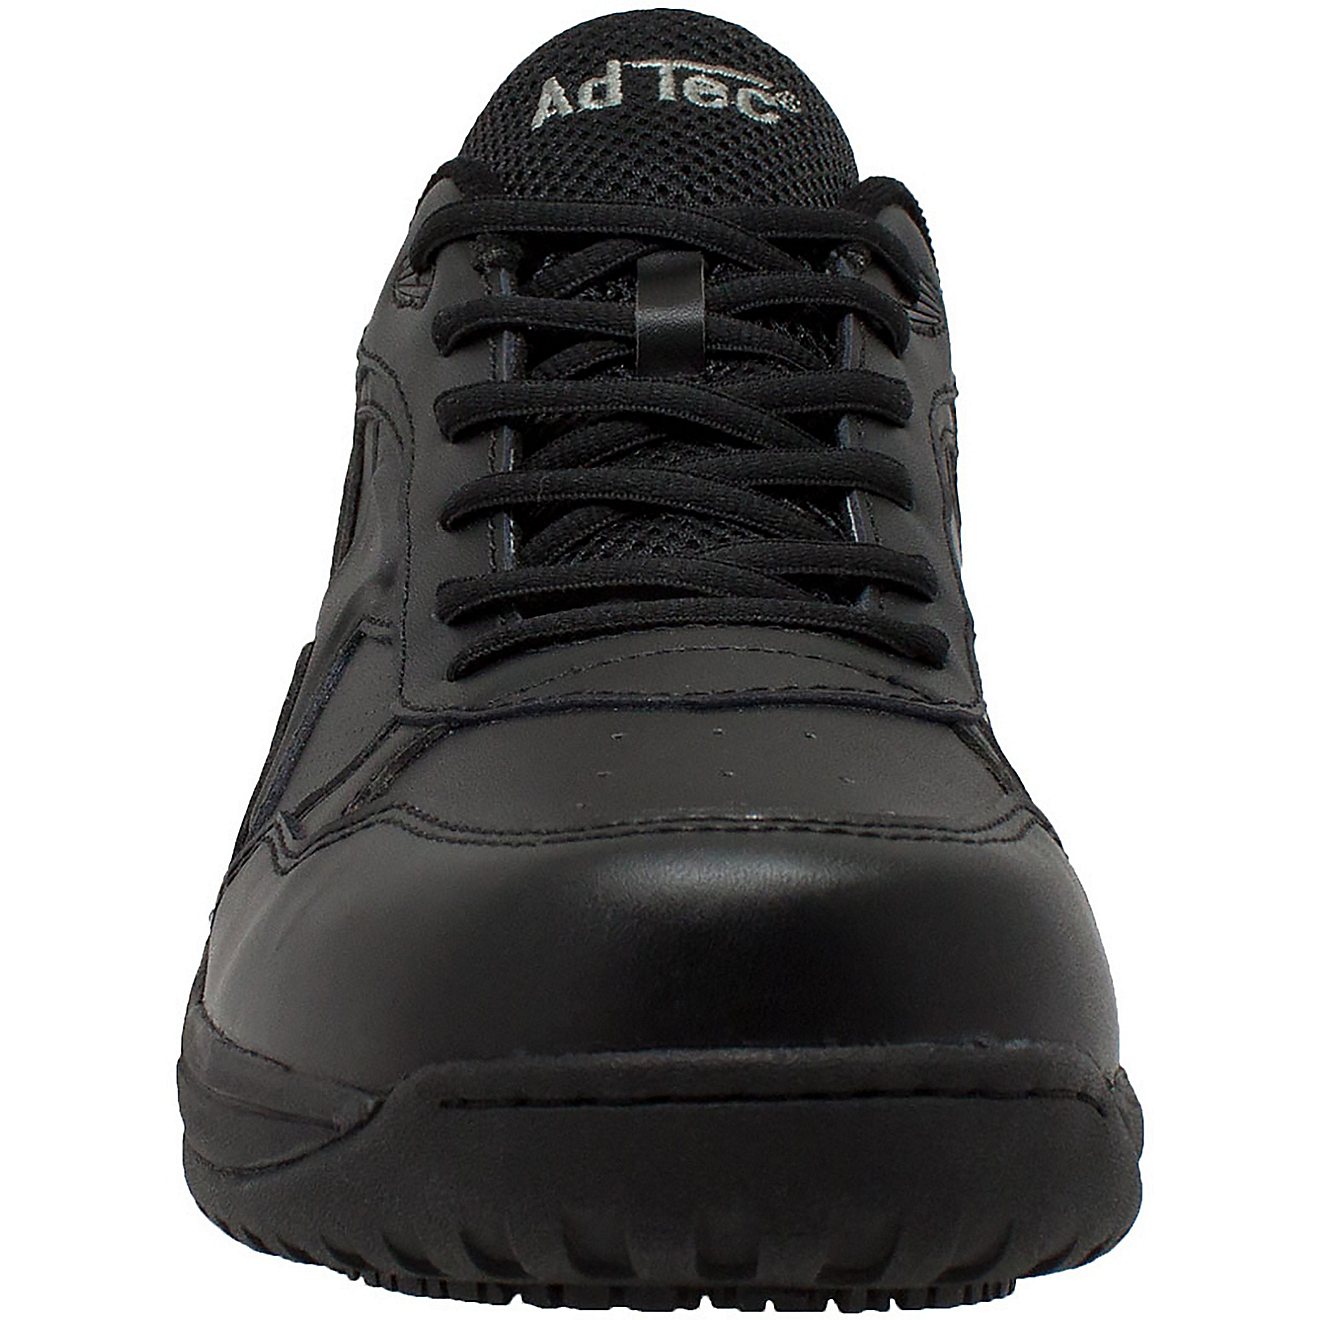 AdTec Men's Composite Toe Athletic Uniform Work Shoes | Academy